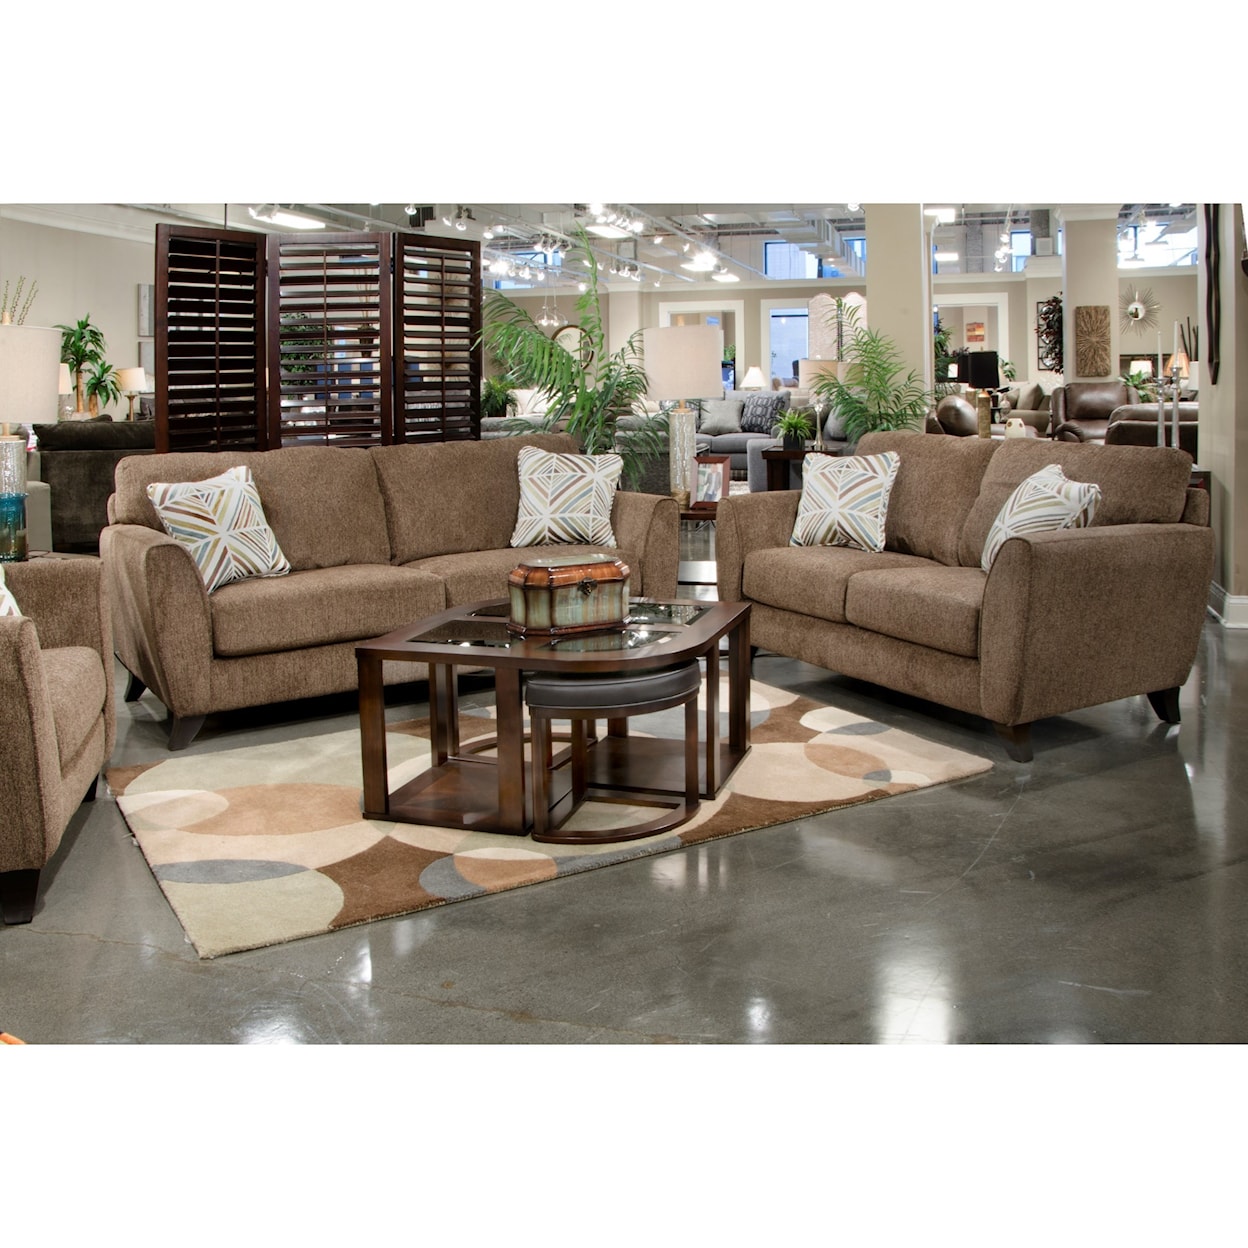 Jackson Furniture 4215 Alyssa Living Room Group